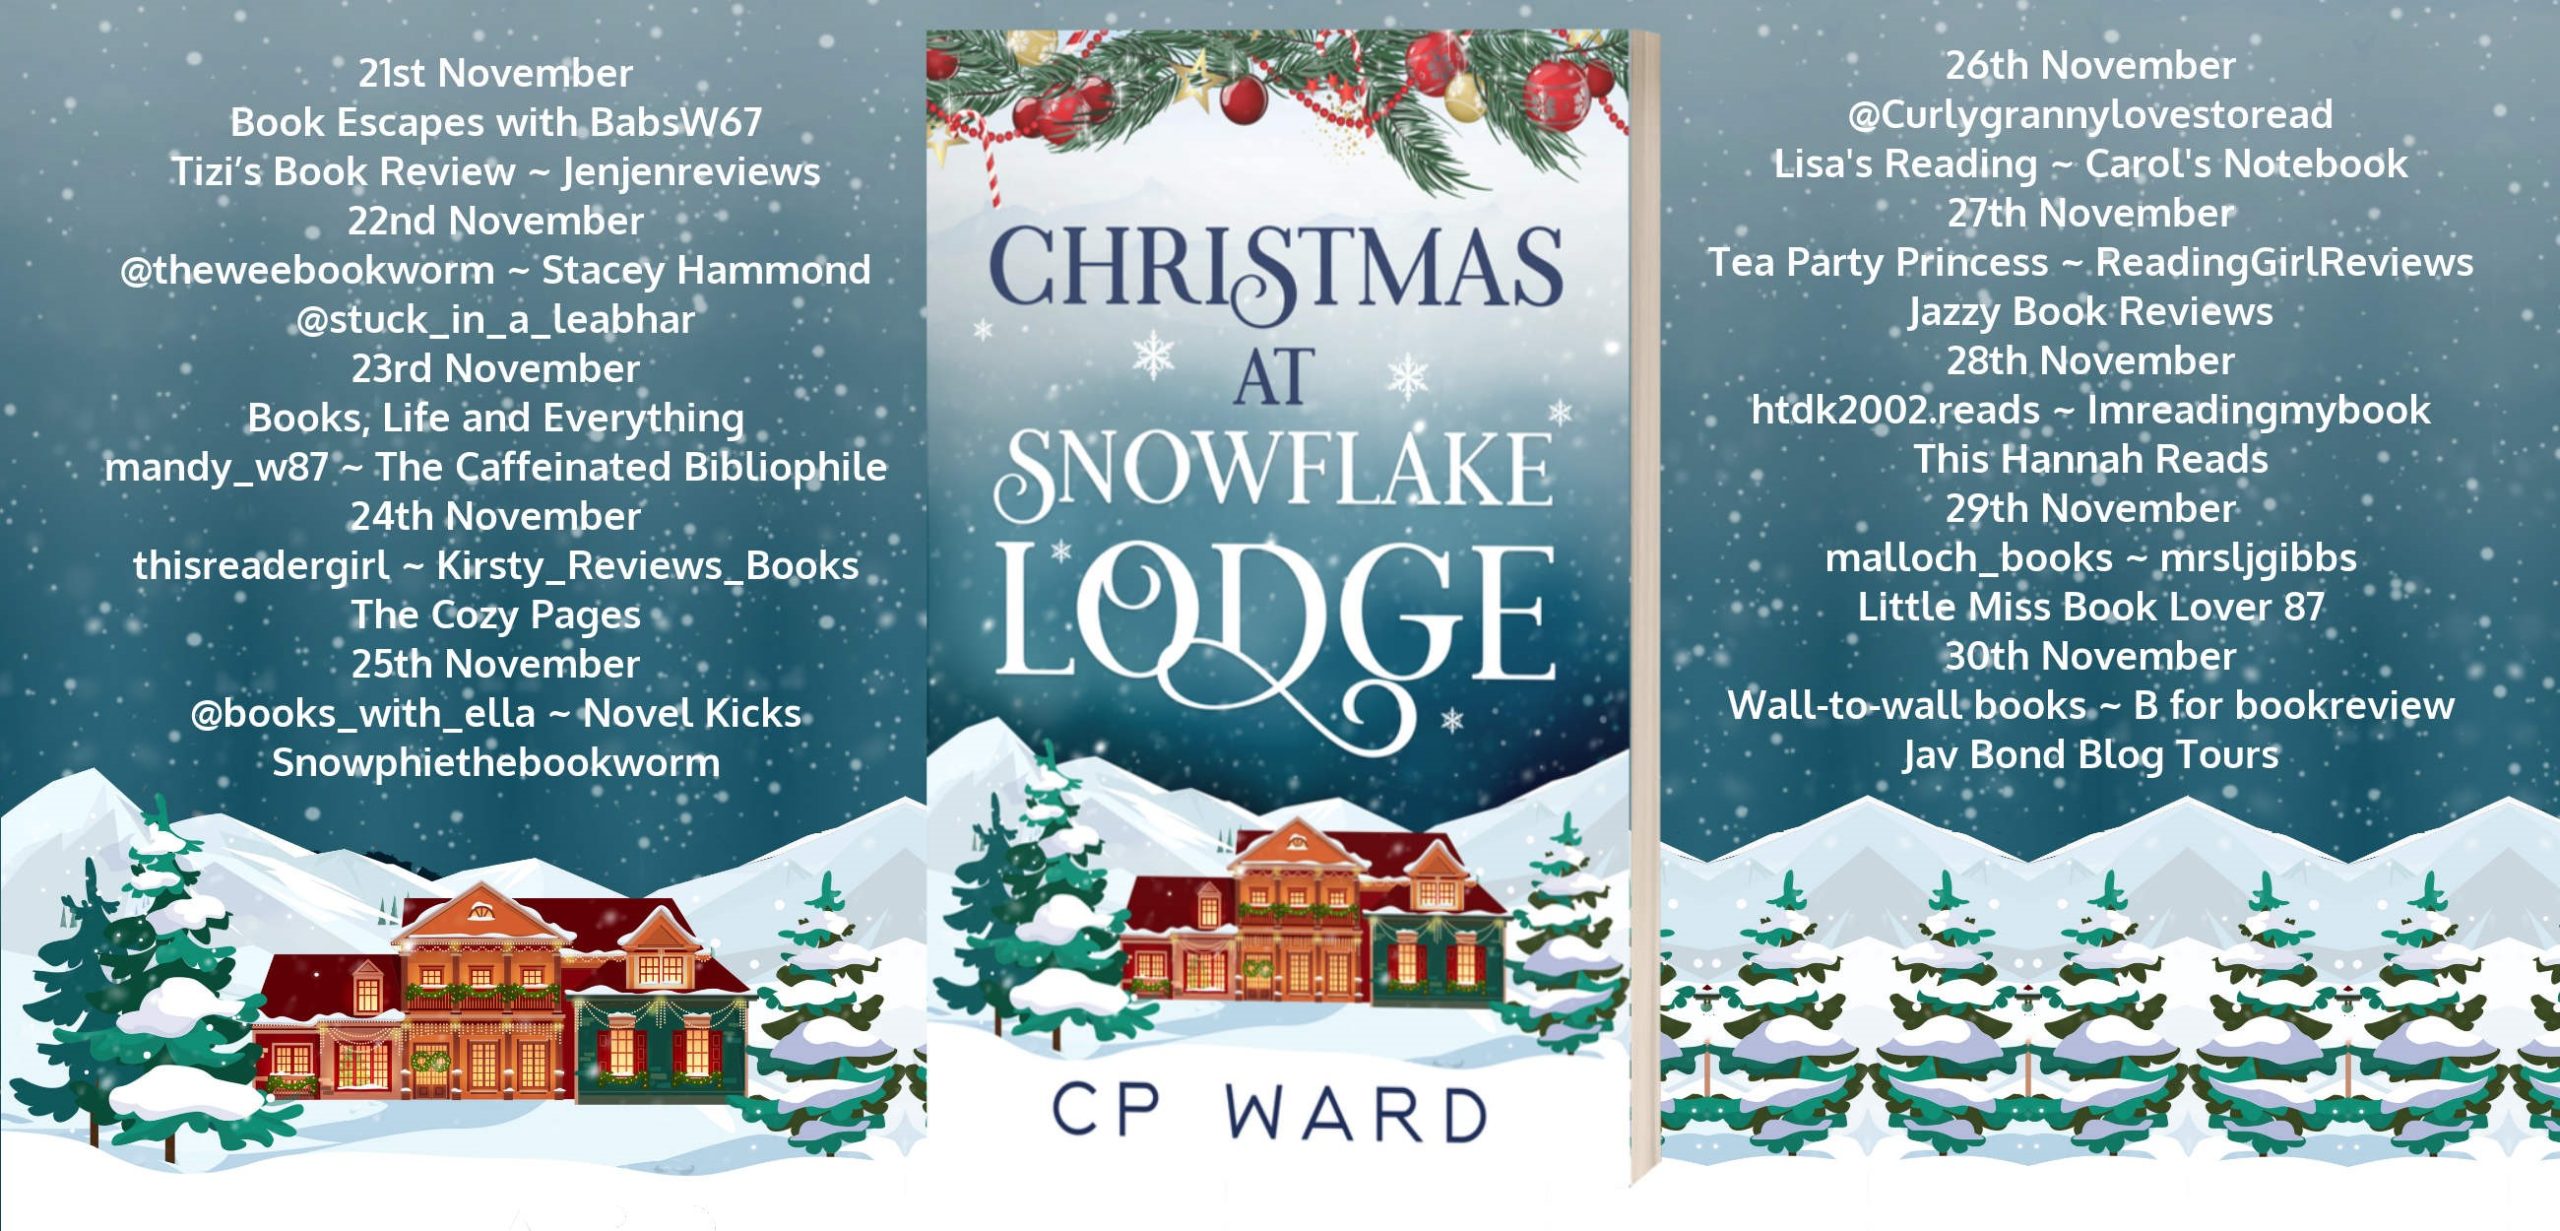 Christmas at Snowflake Lodge by C.P. Ward